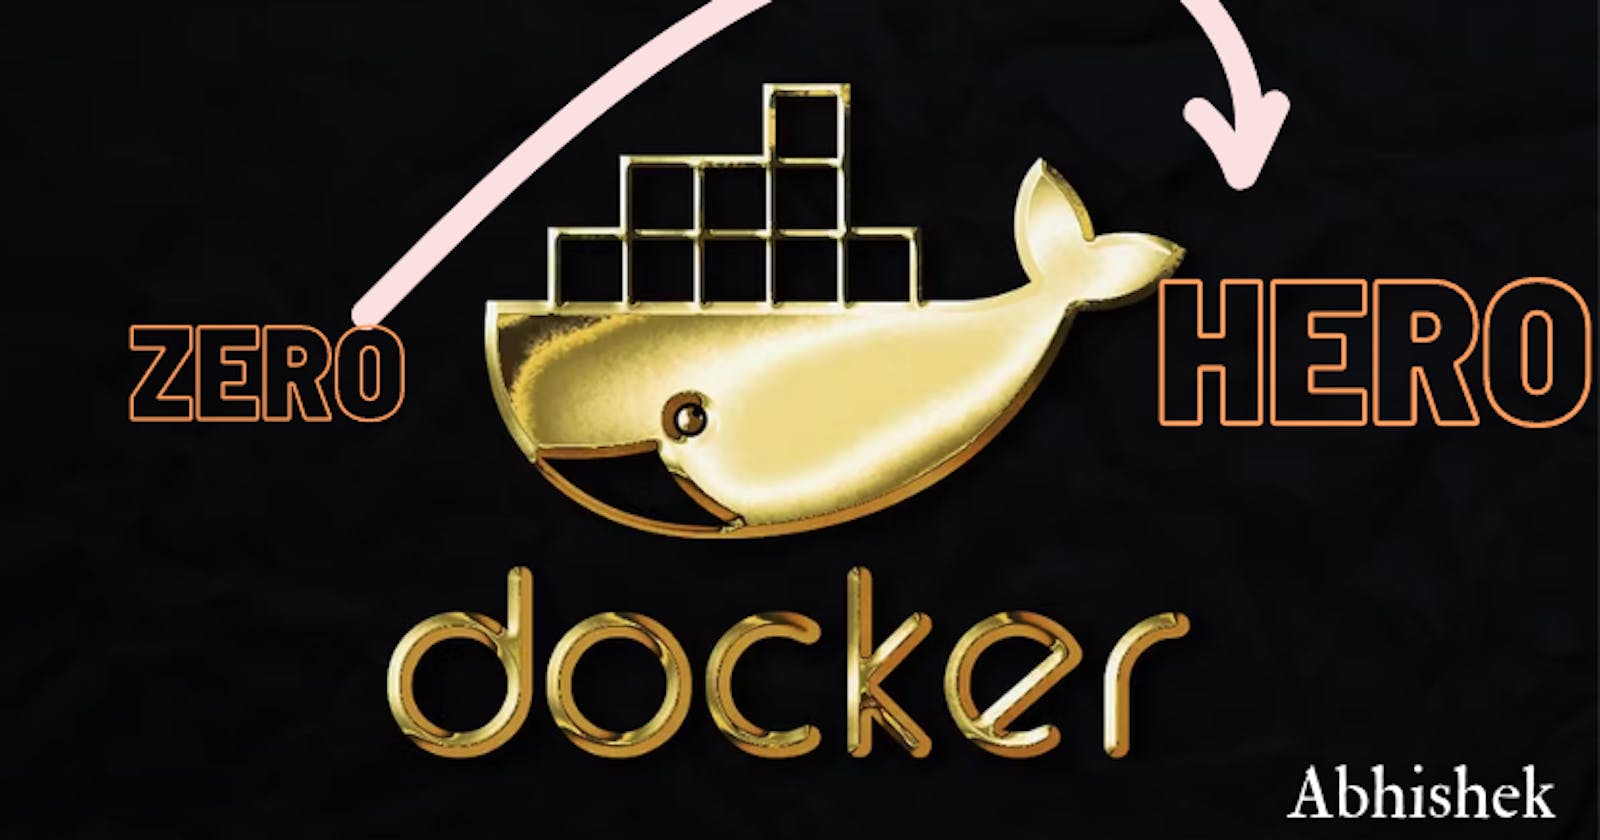 Ultimate Guide on Docker